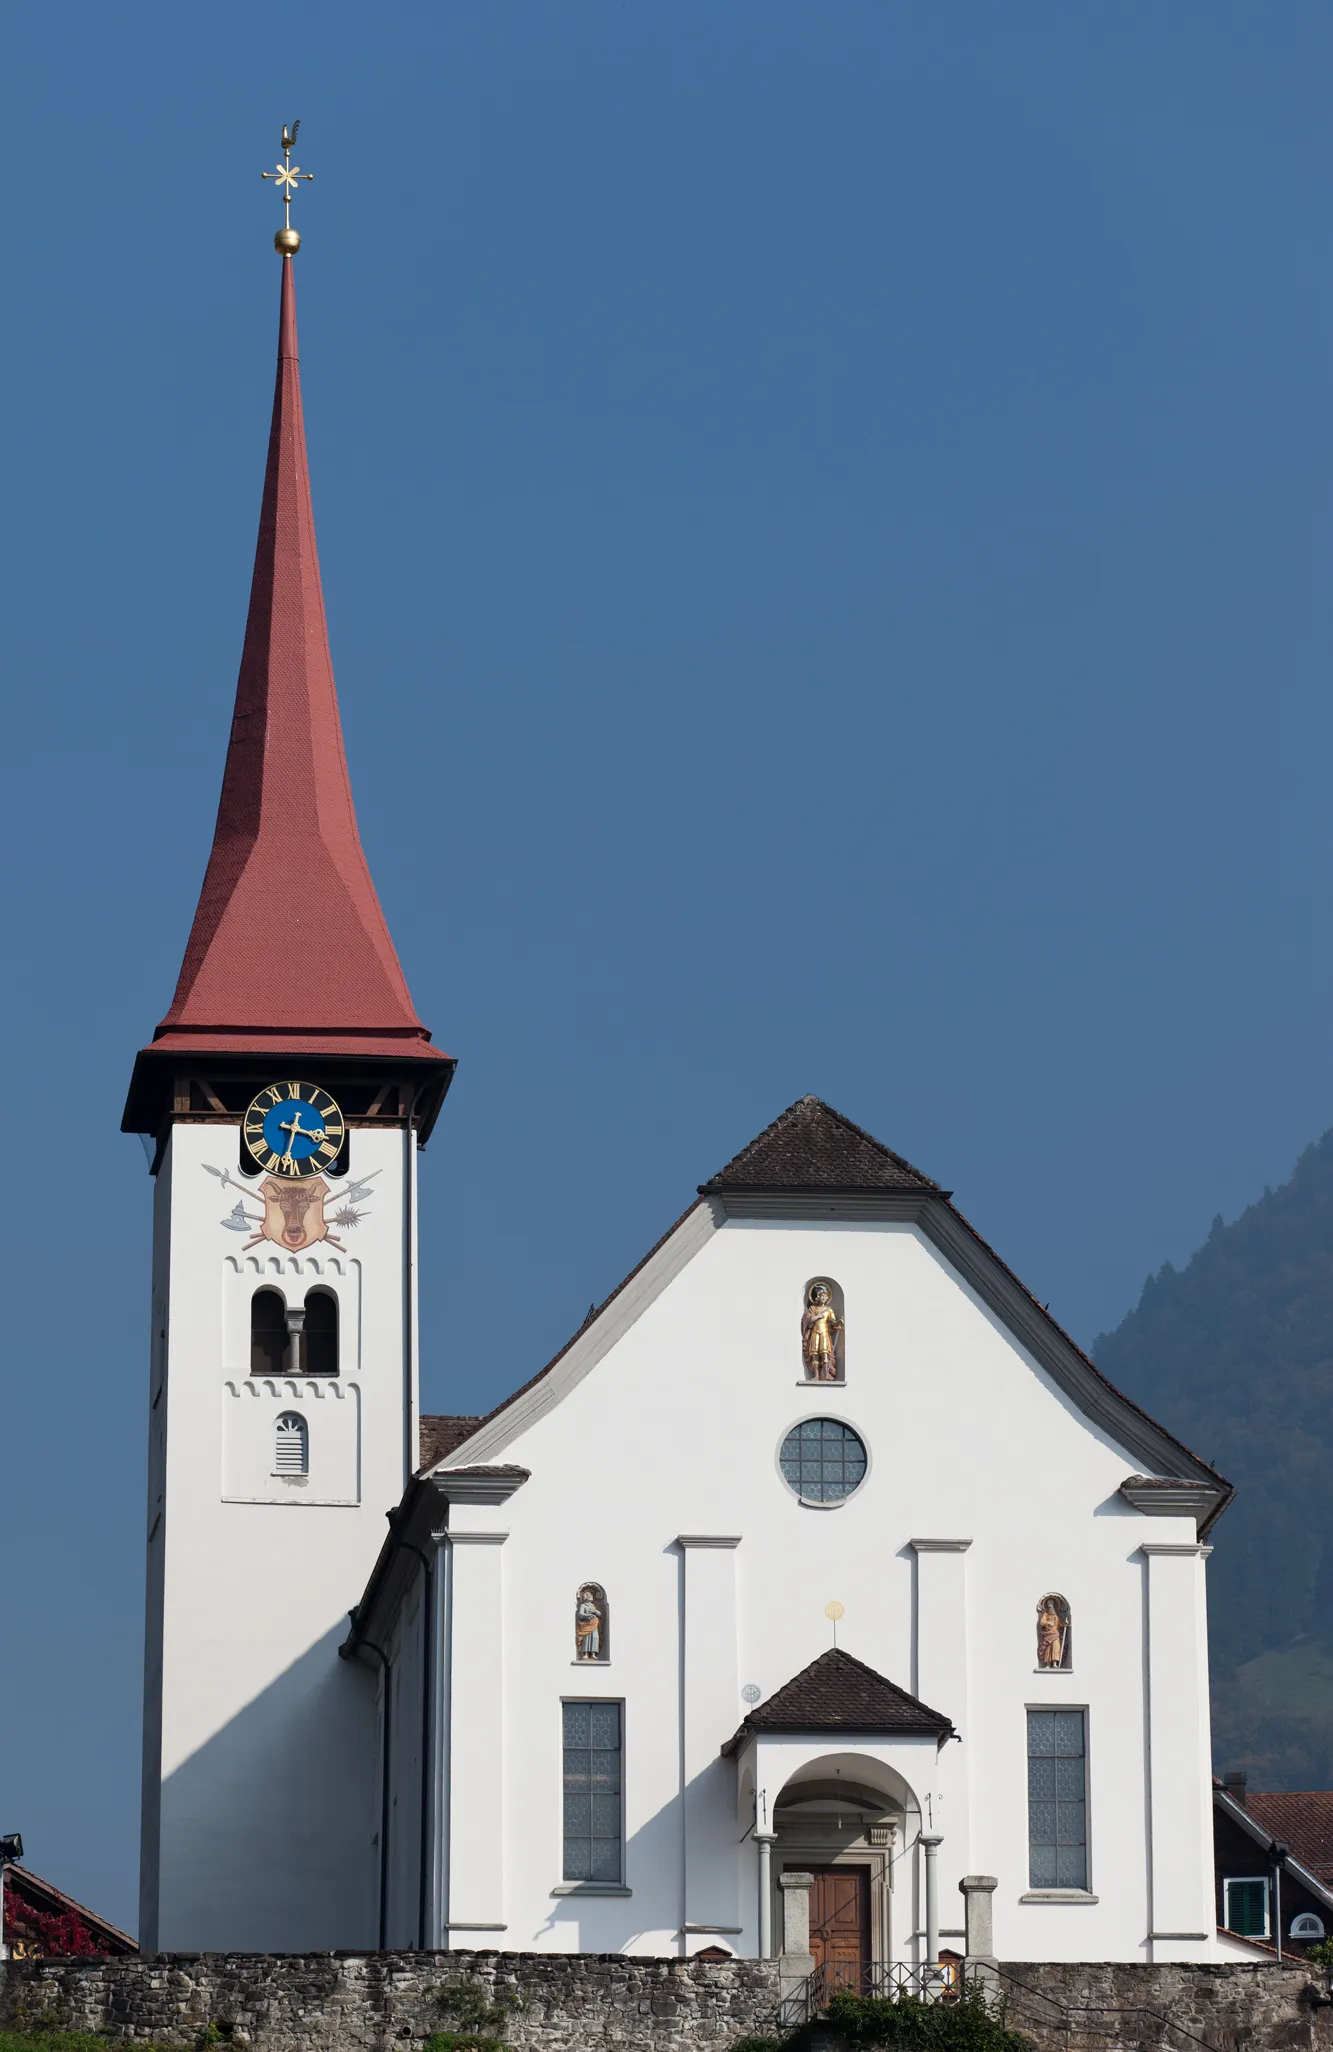 Zdjęcie: Zentralschweiz